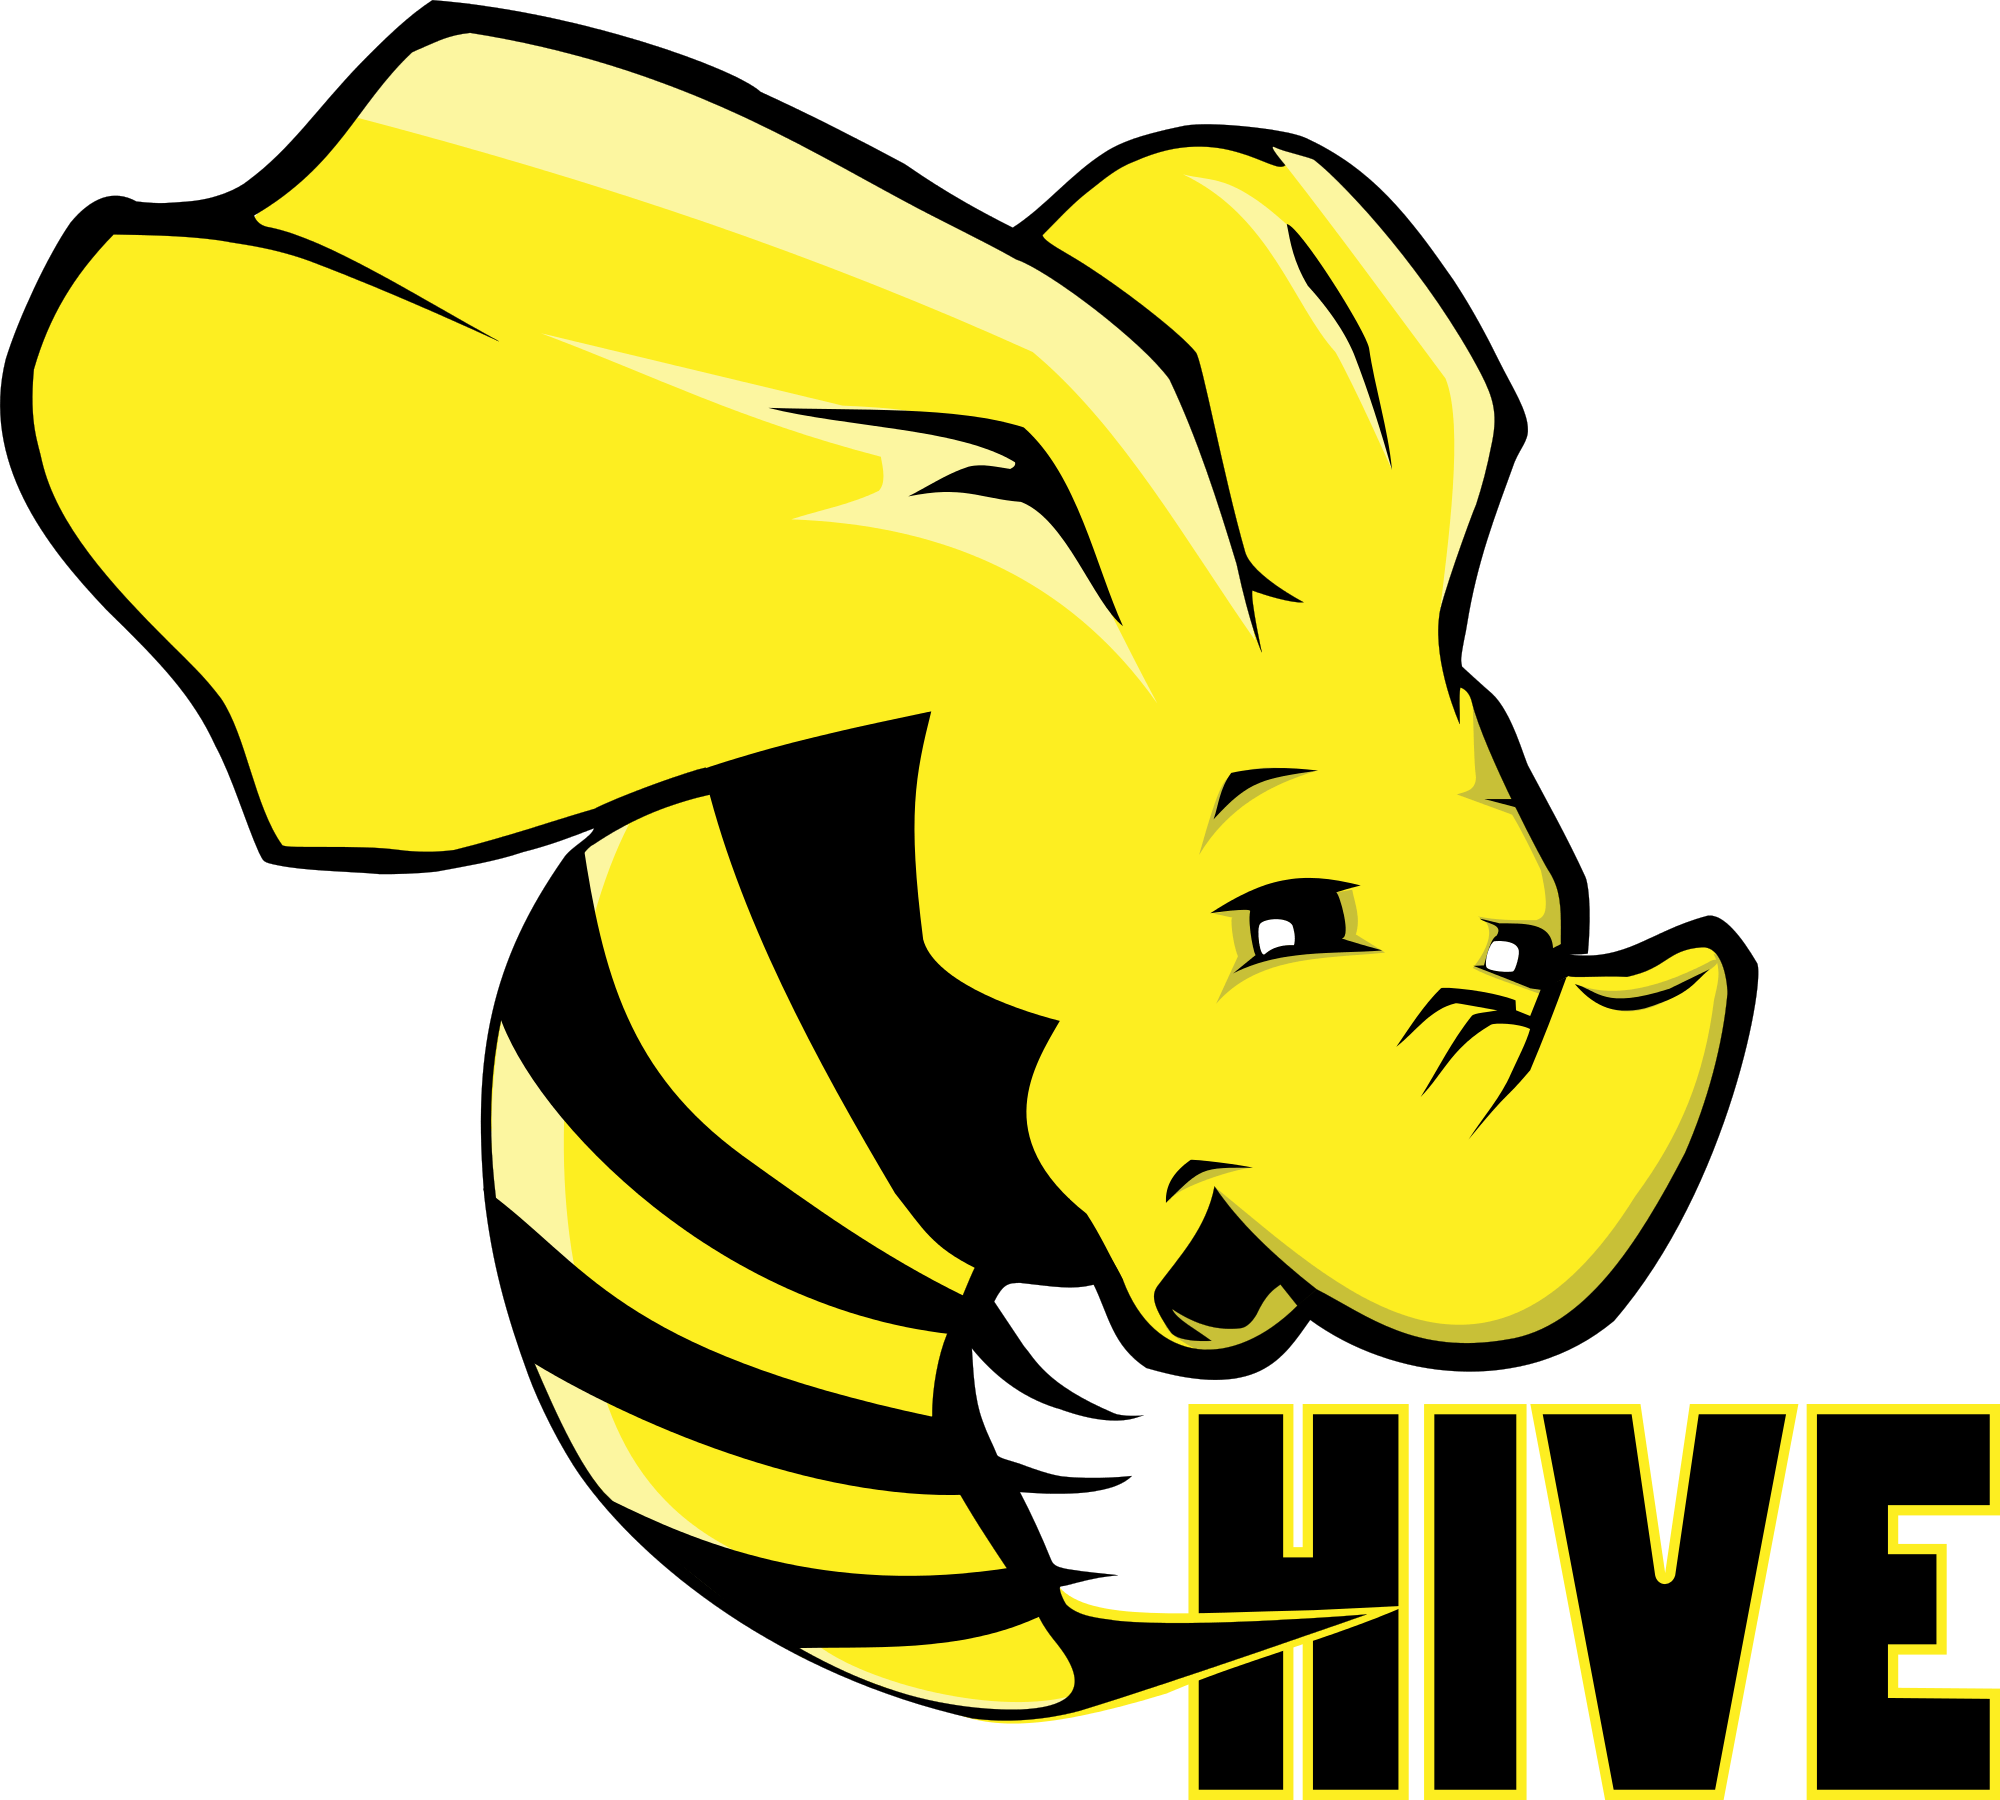 Hive Logo - Apache Hive logo.svg